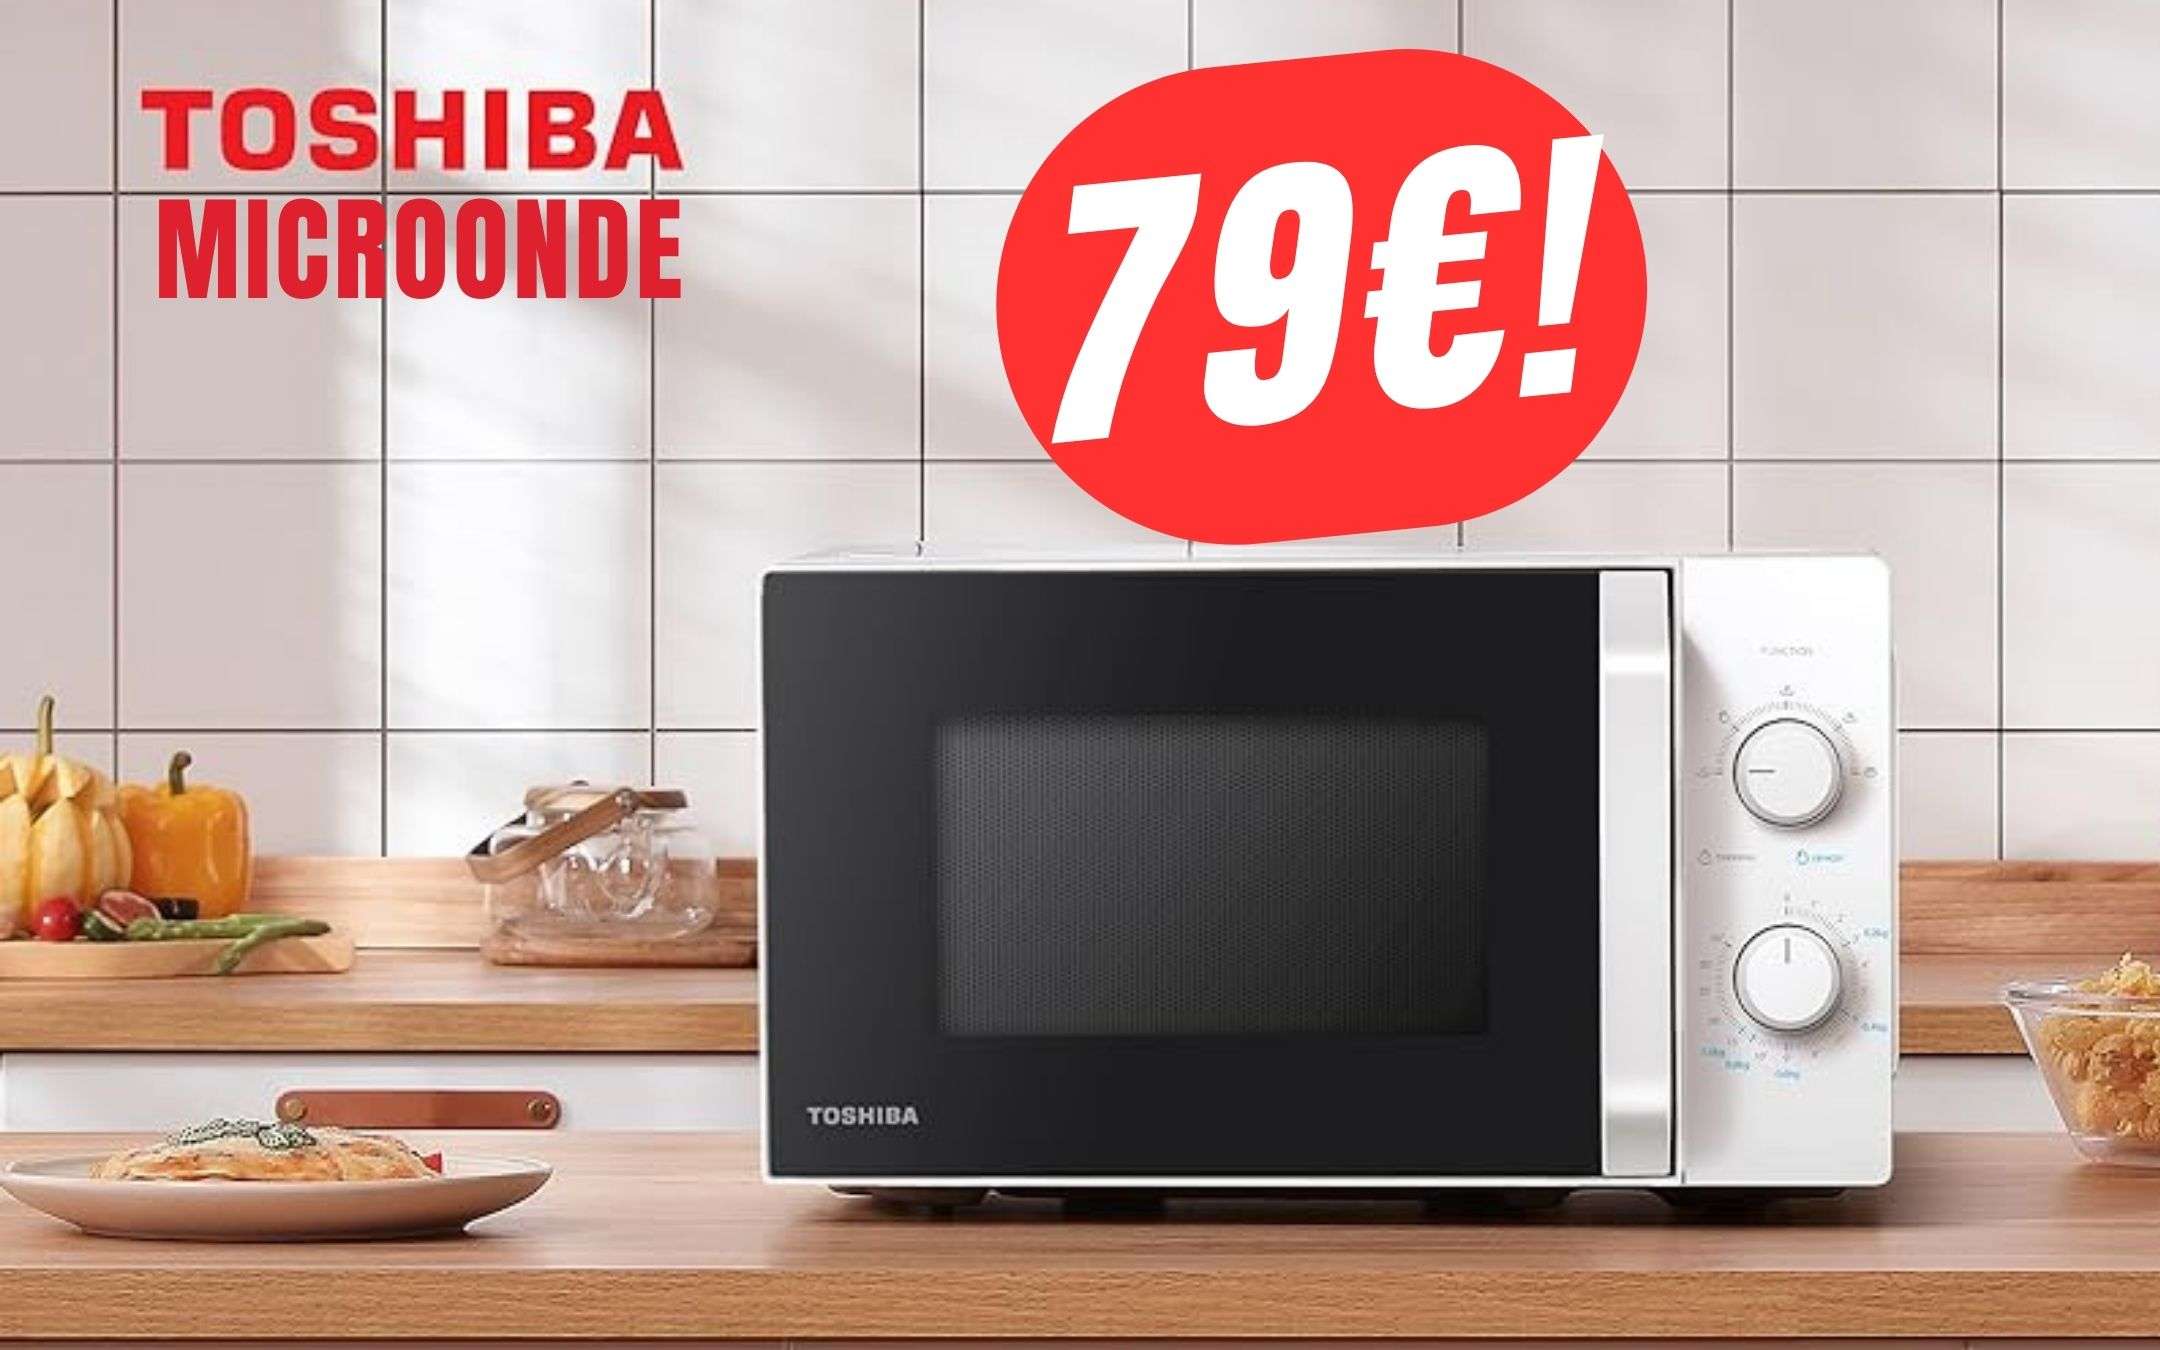 Grazie all'Offerta di , potrai avere il Microonde Toshiba a soli 79€!